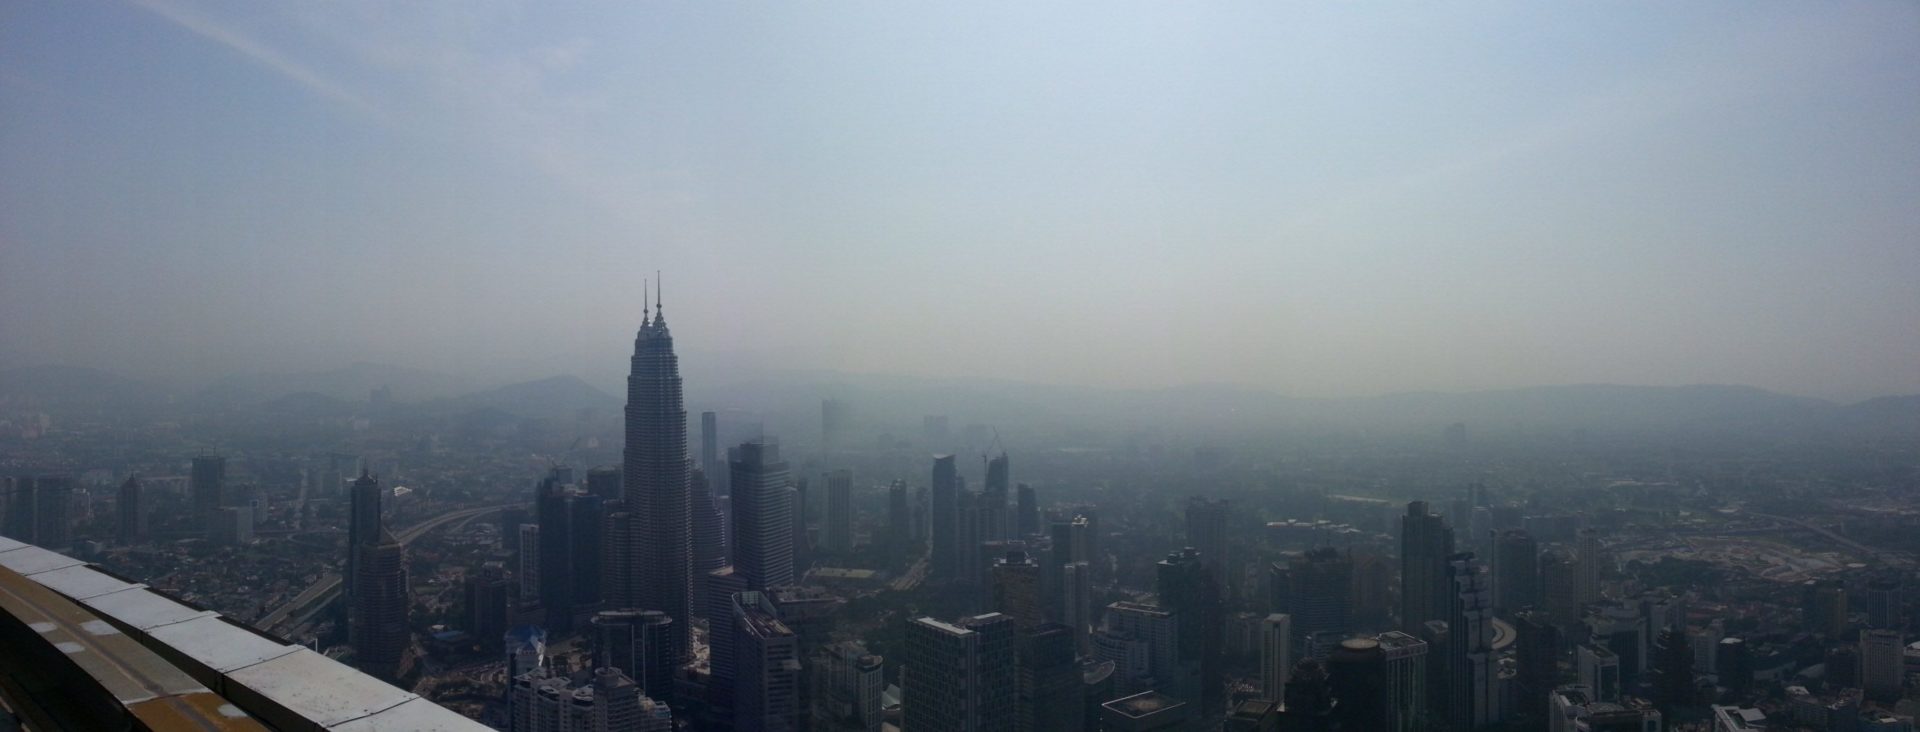 Imagen aérea de Kuala Lumpur